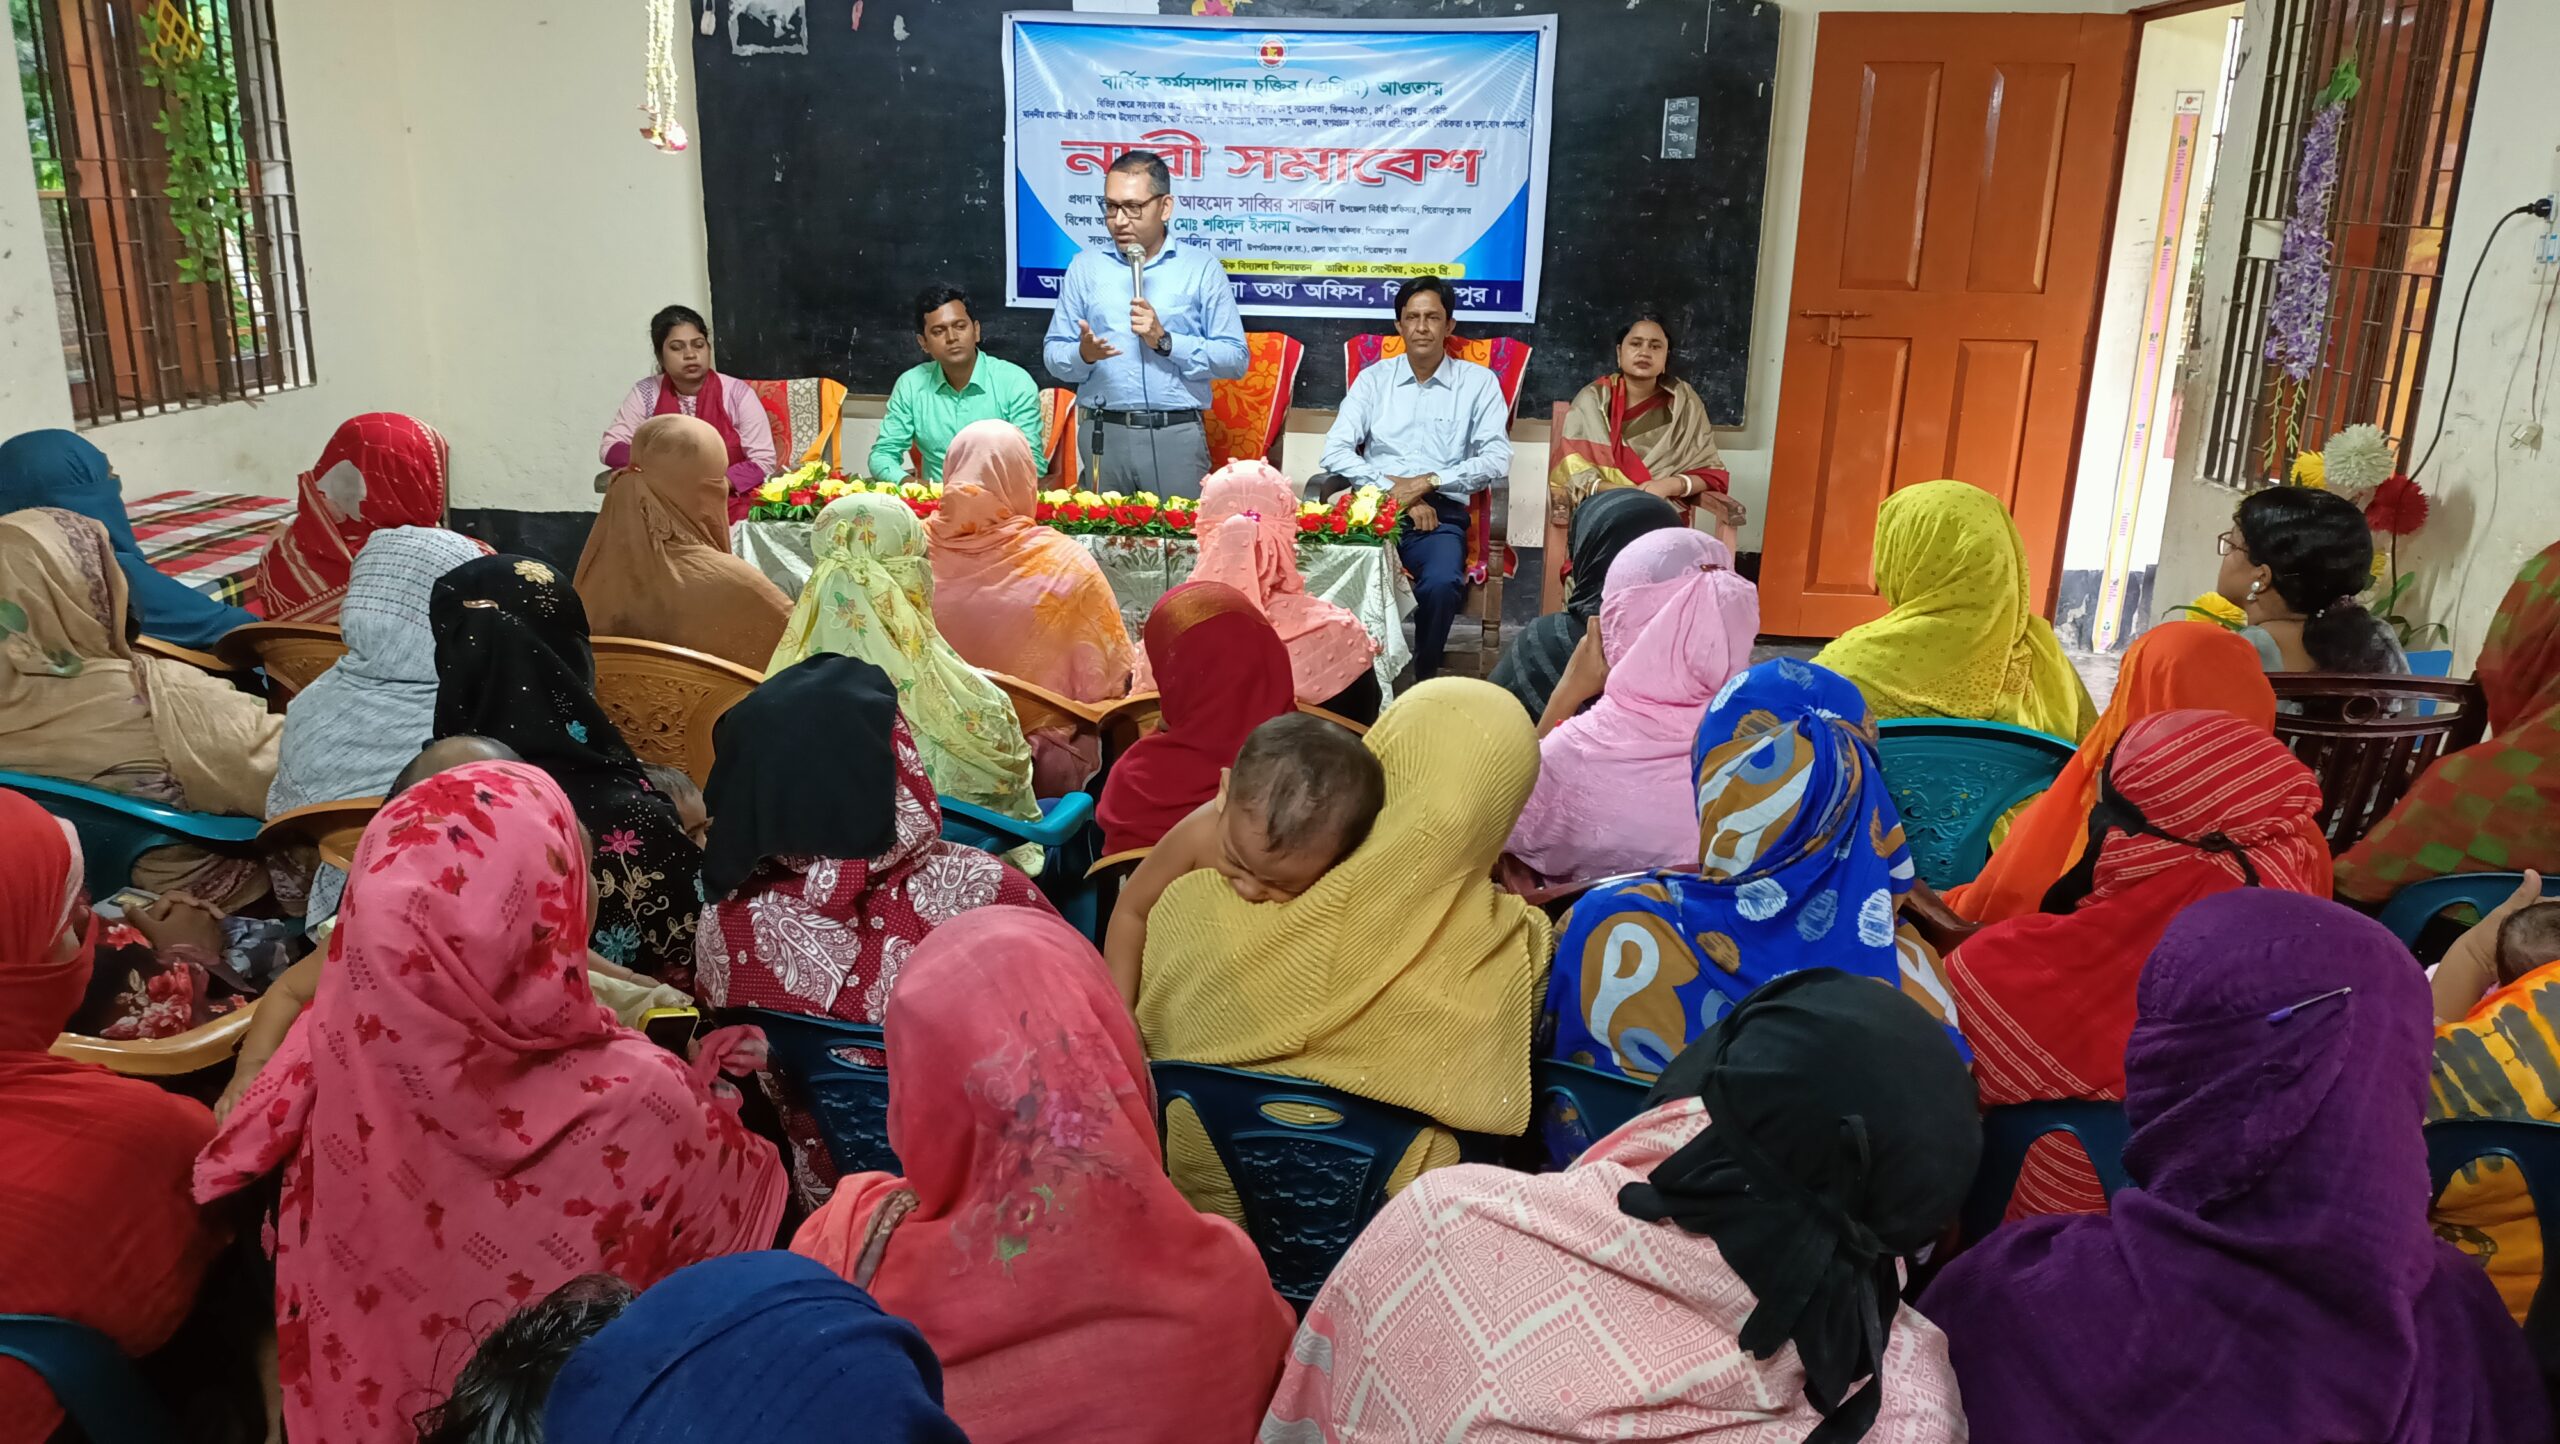 পিরোজপুর জেলা তথ্য অফিসের উদ্যোগে নারী সমাবেশ অনুষ্ঠিত